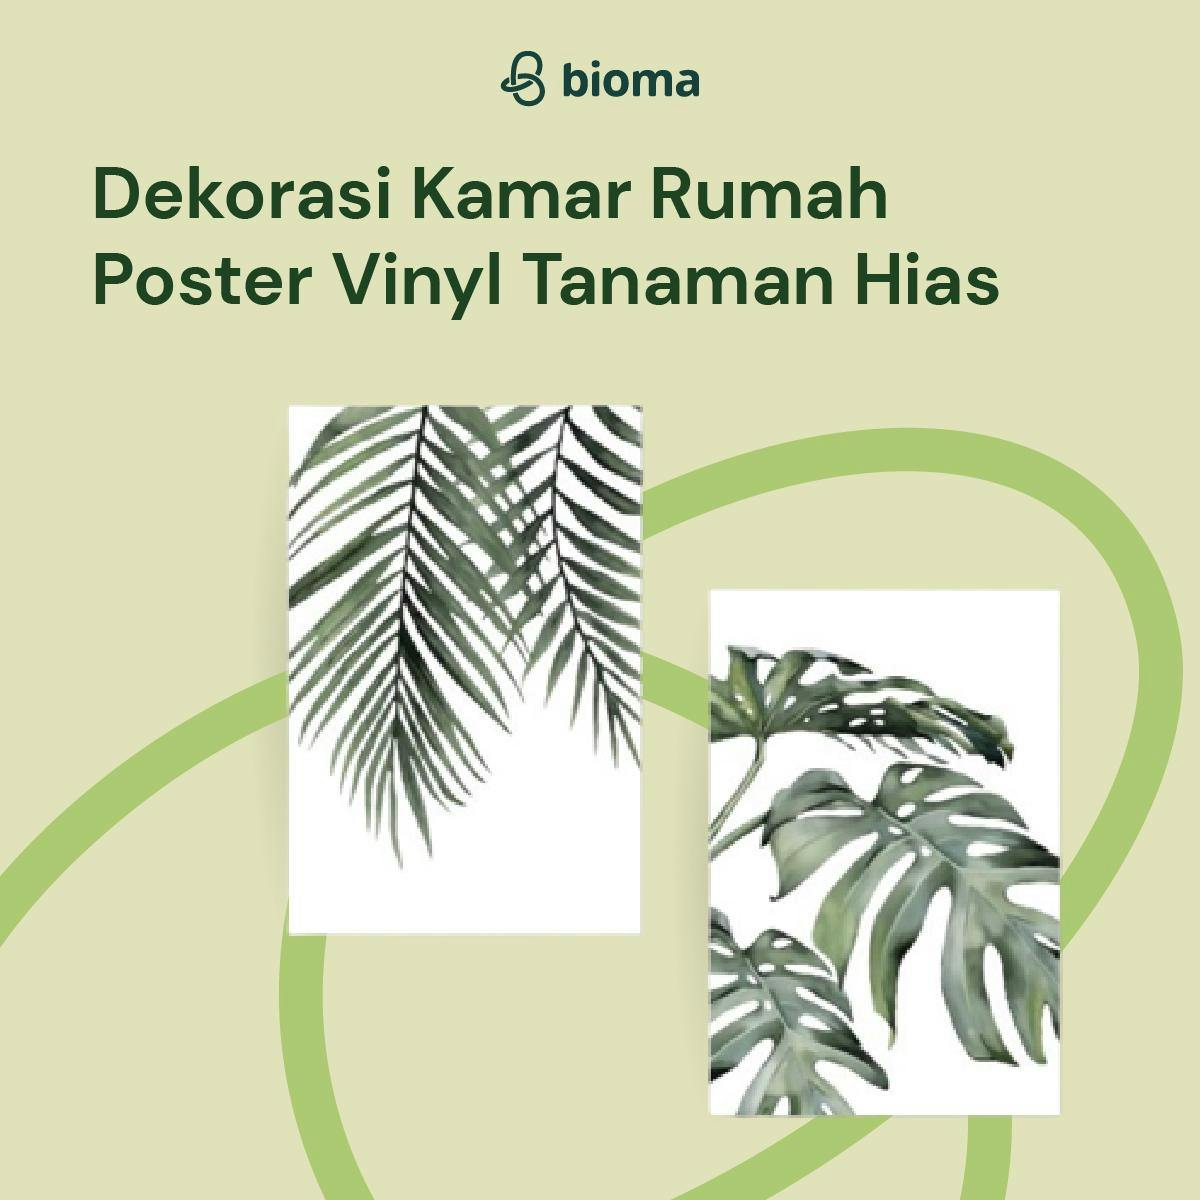 Image 502 Dekorasi Kamar Rumah Poster Vinyl Tanaman Hias